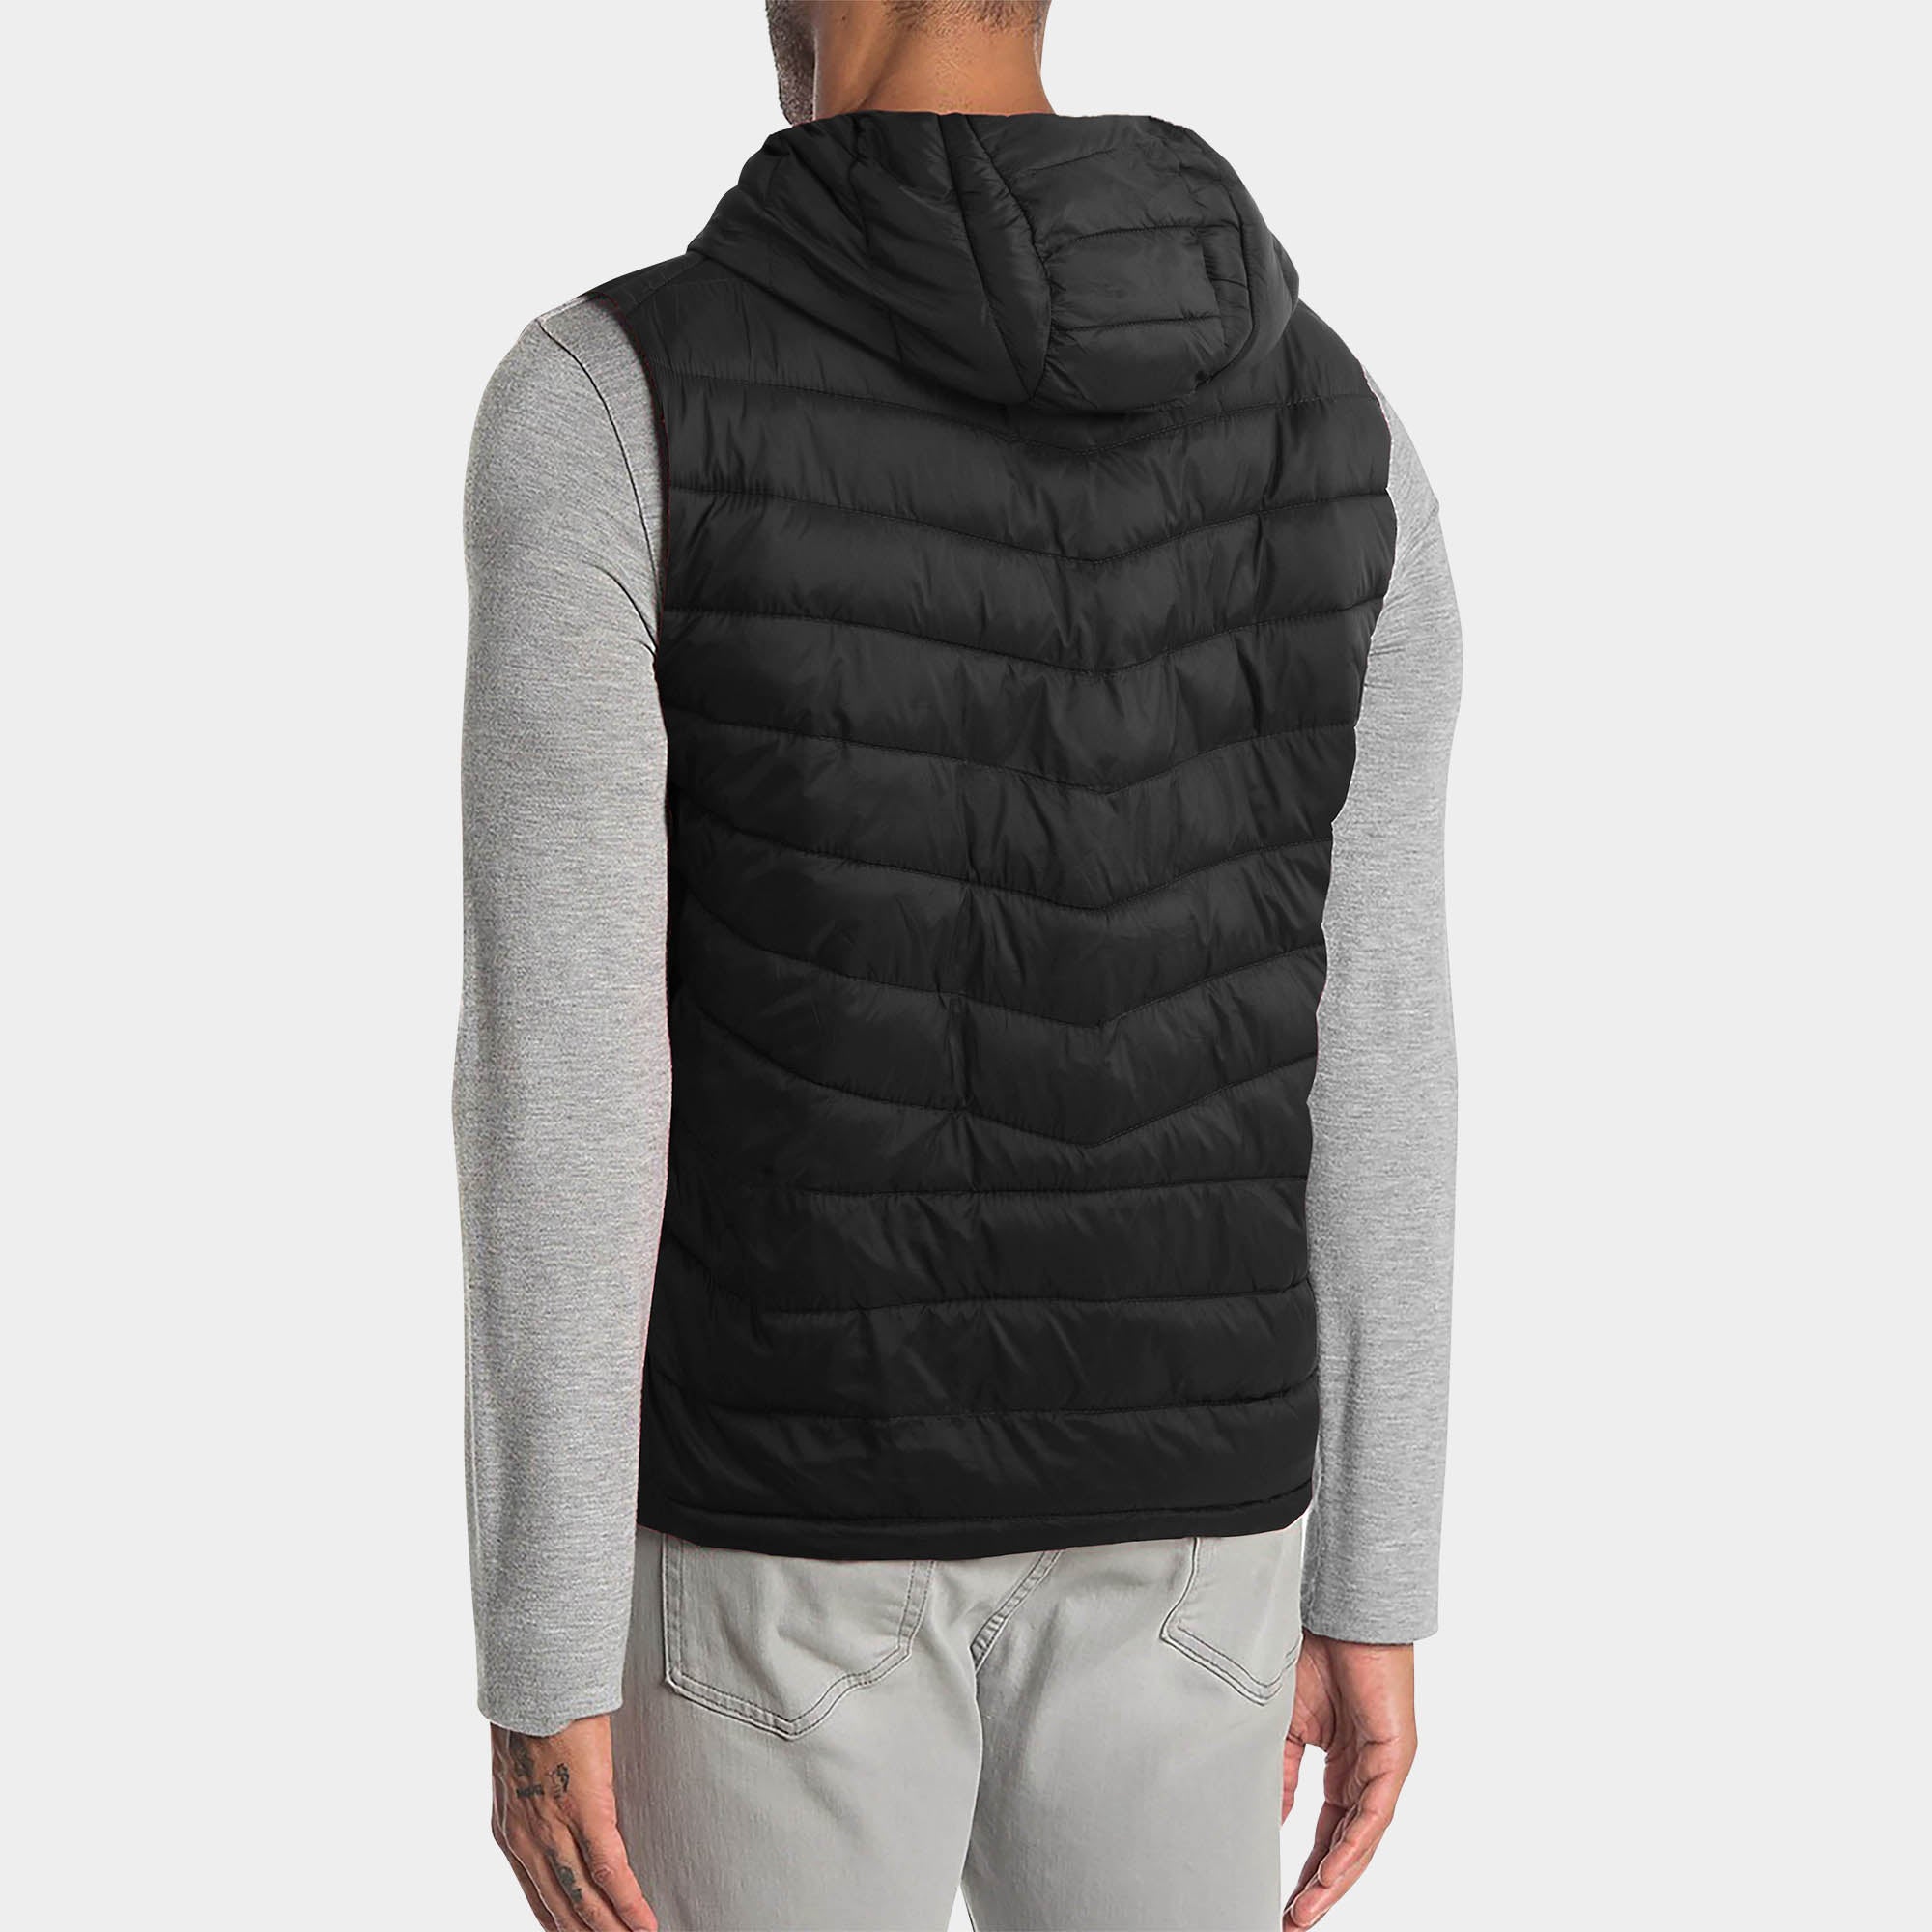 vest_mens vest_vest hoodie_mens hooded vest_puffy vest_vest jacket_mens vest jacket_winter vest_hooded down vest_Black